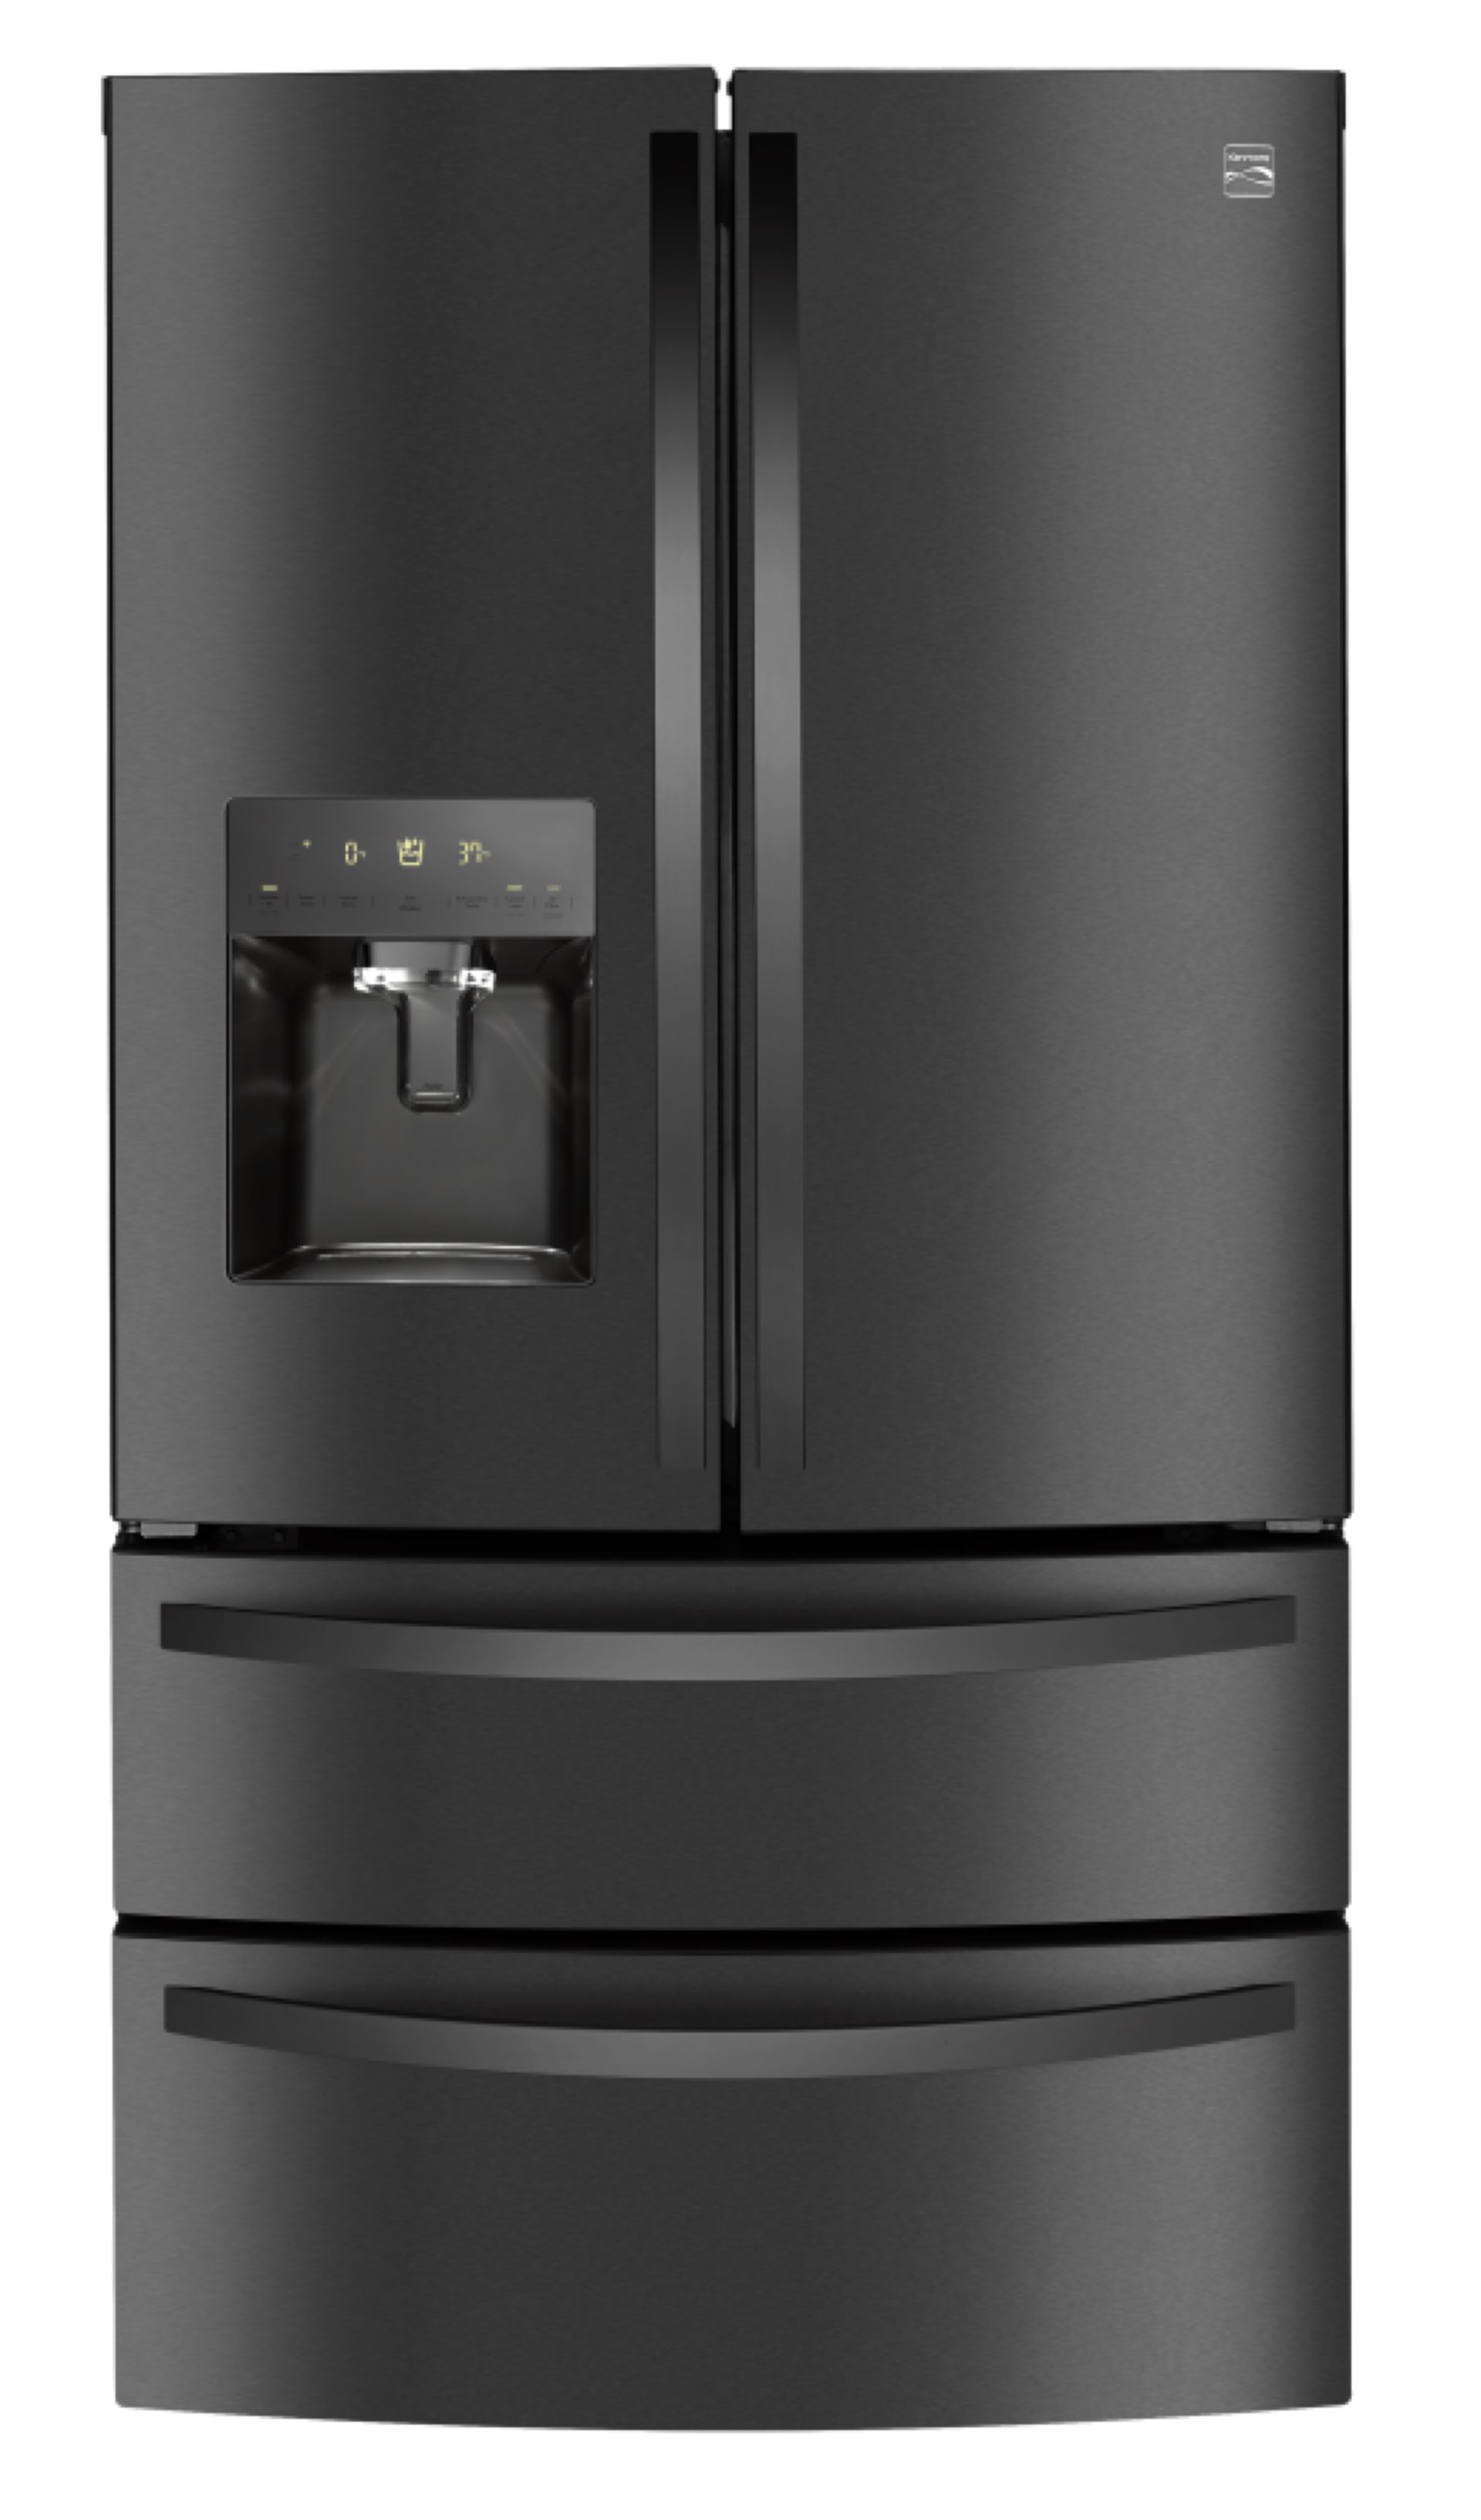 Kenmore Elite 72597 27.8 cu. ft. 4-Door Smart Refrigerator - Black Kenmore Black Stainless Steel Refrigerator